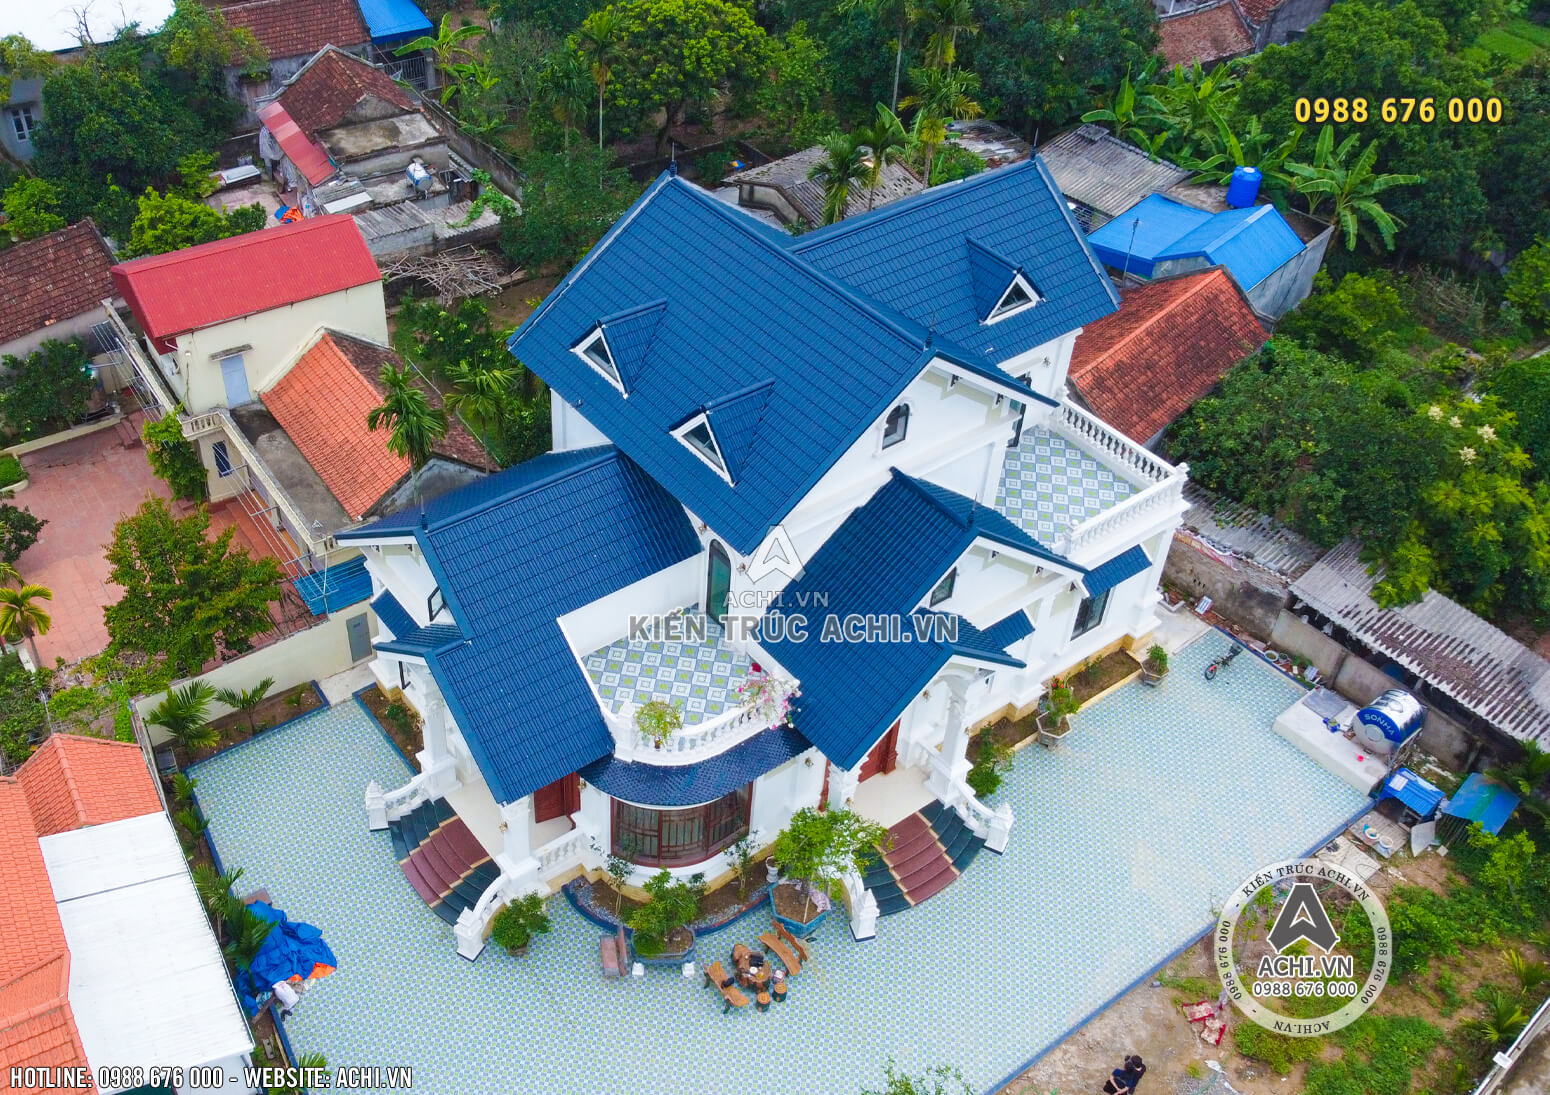 Toàn cảnh công trình thực tế mẫu nhà 1,5 tầng mái Thái khi nhìn từ trên cao xuống